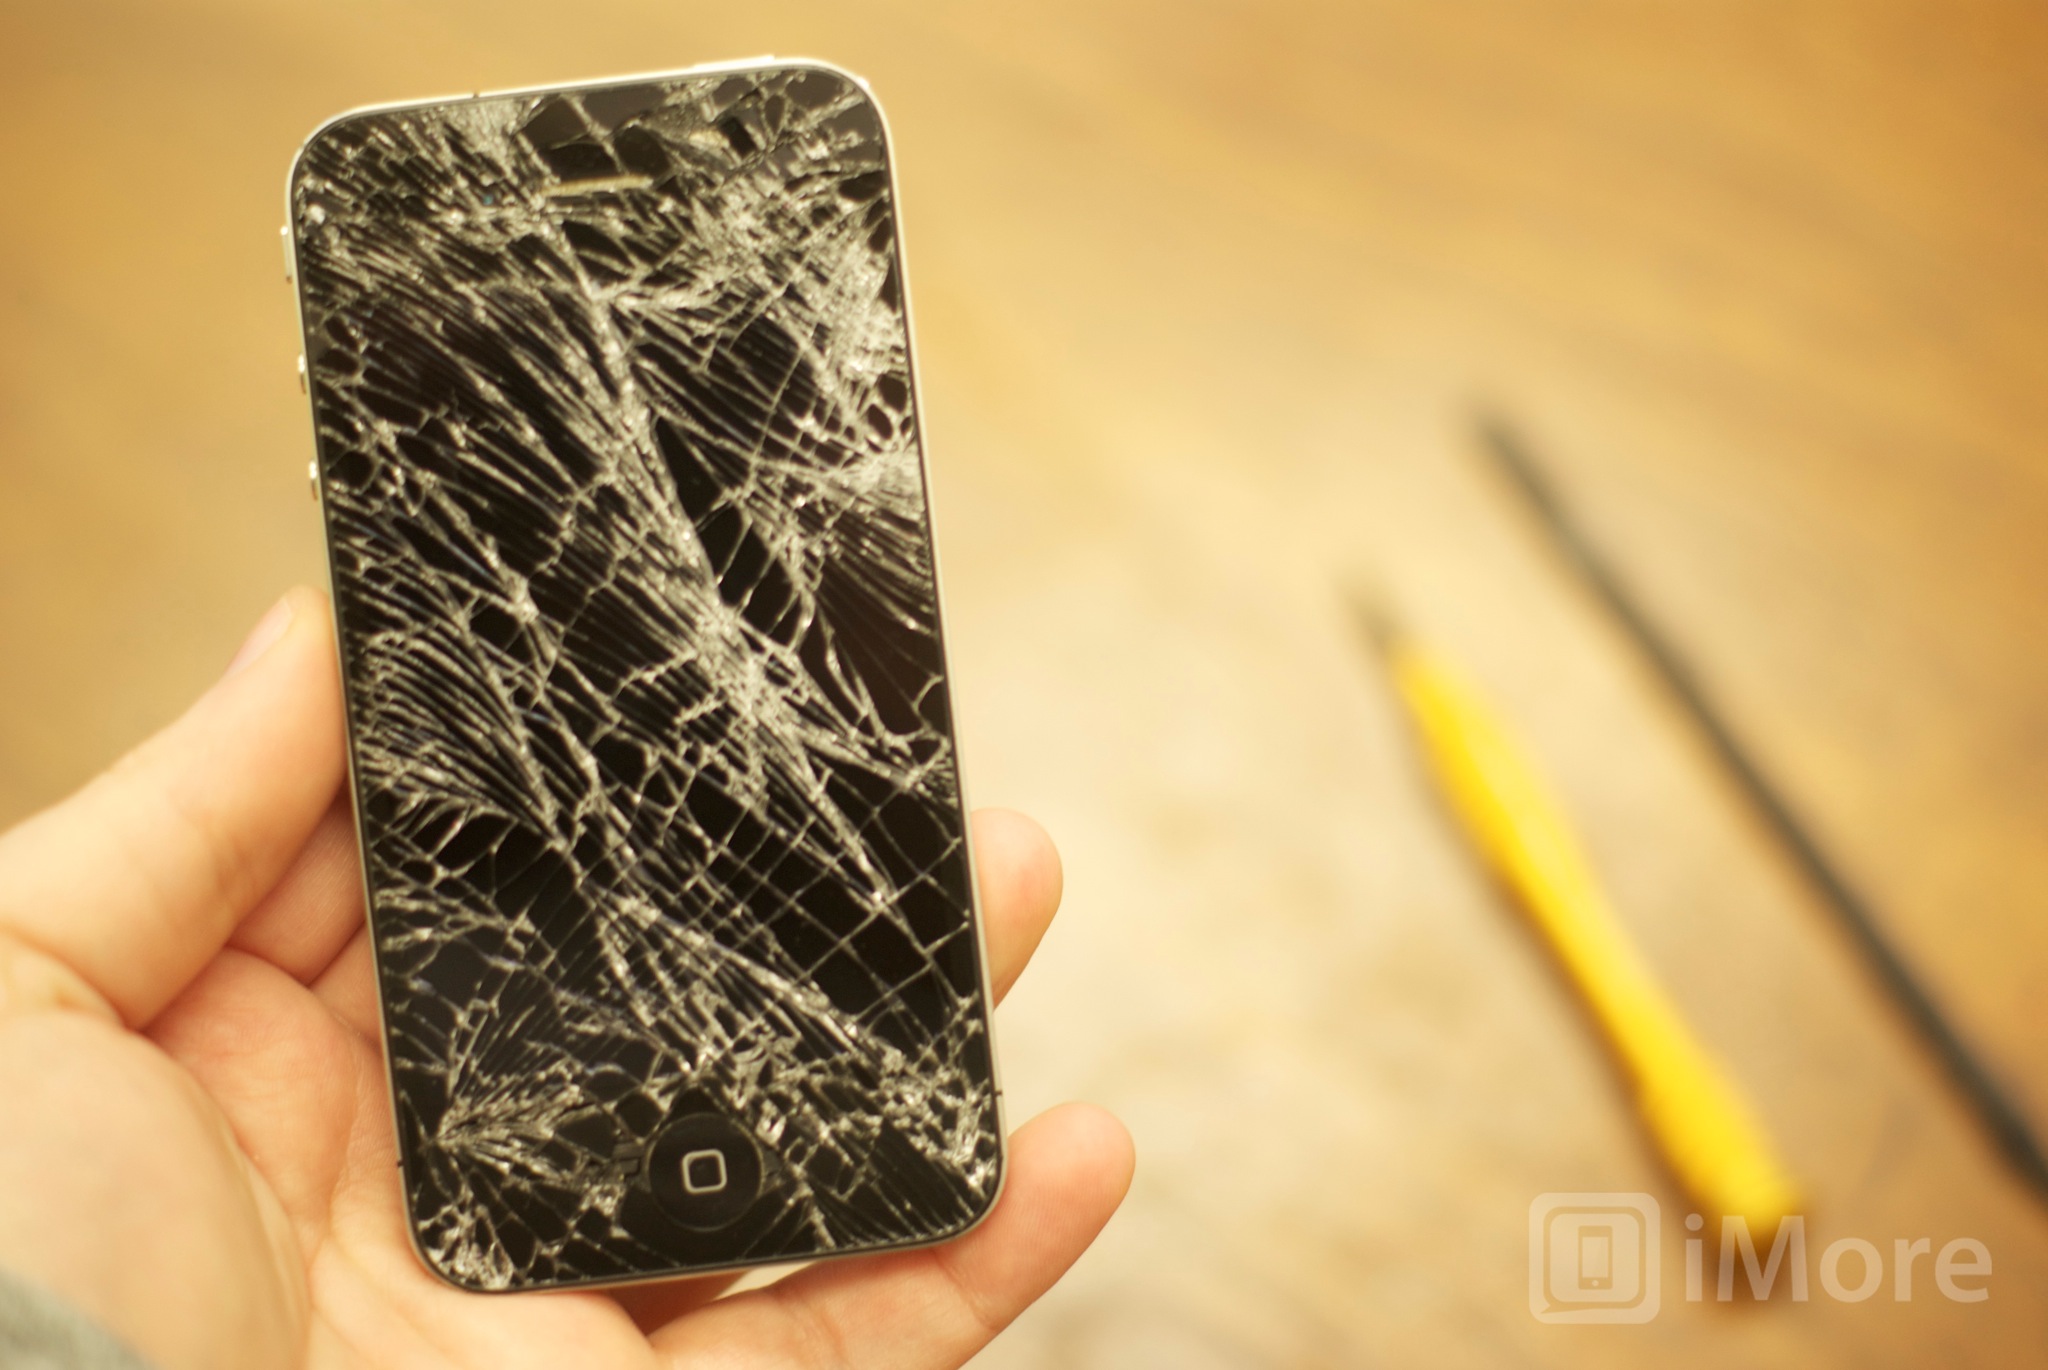 How to DIY repair an iPhone 4 GSM screen